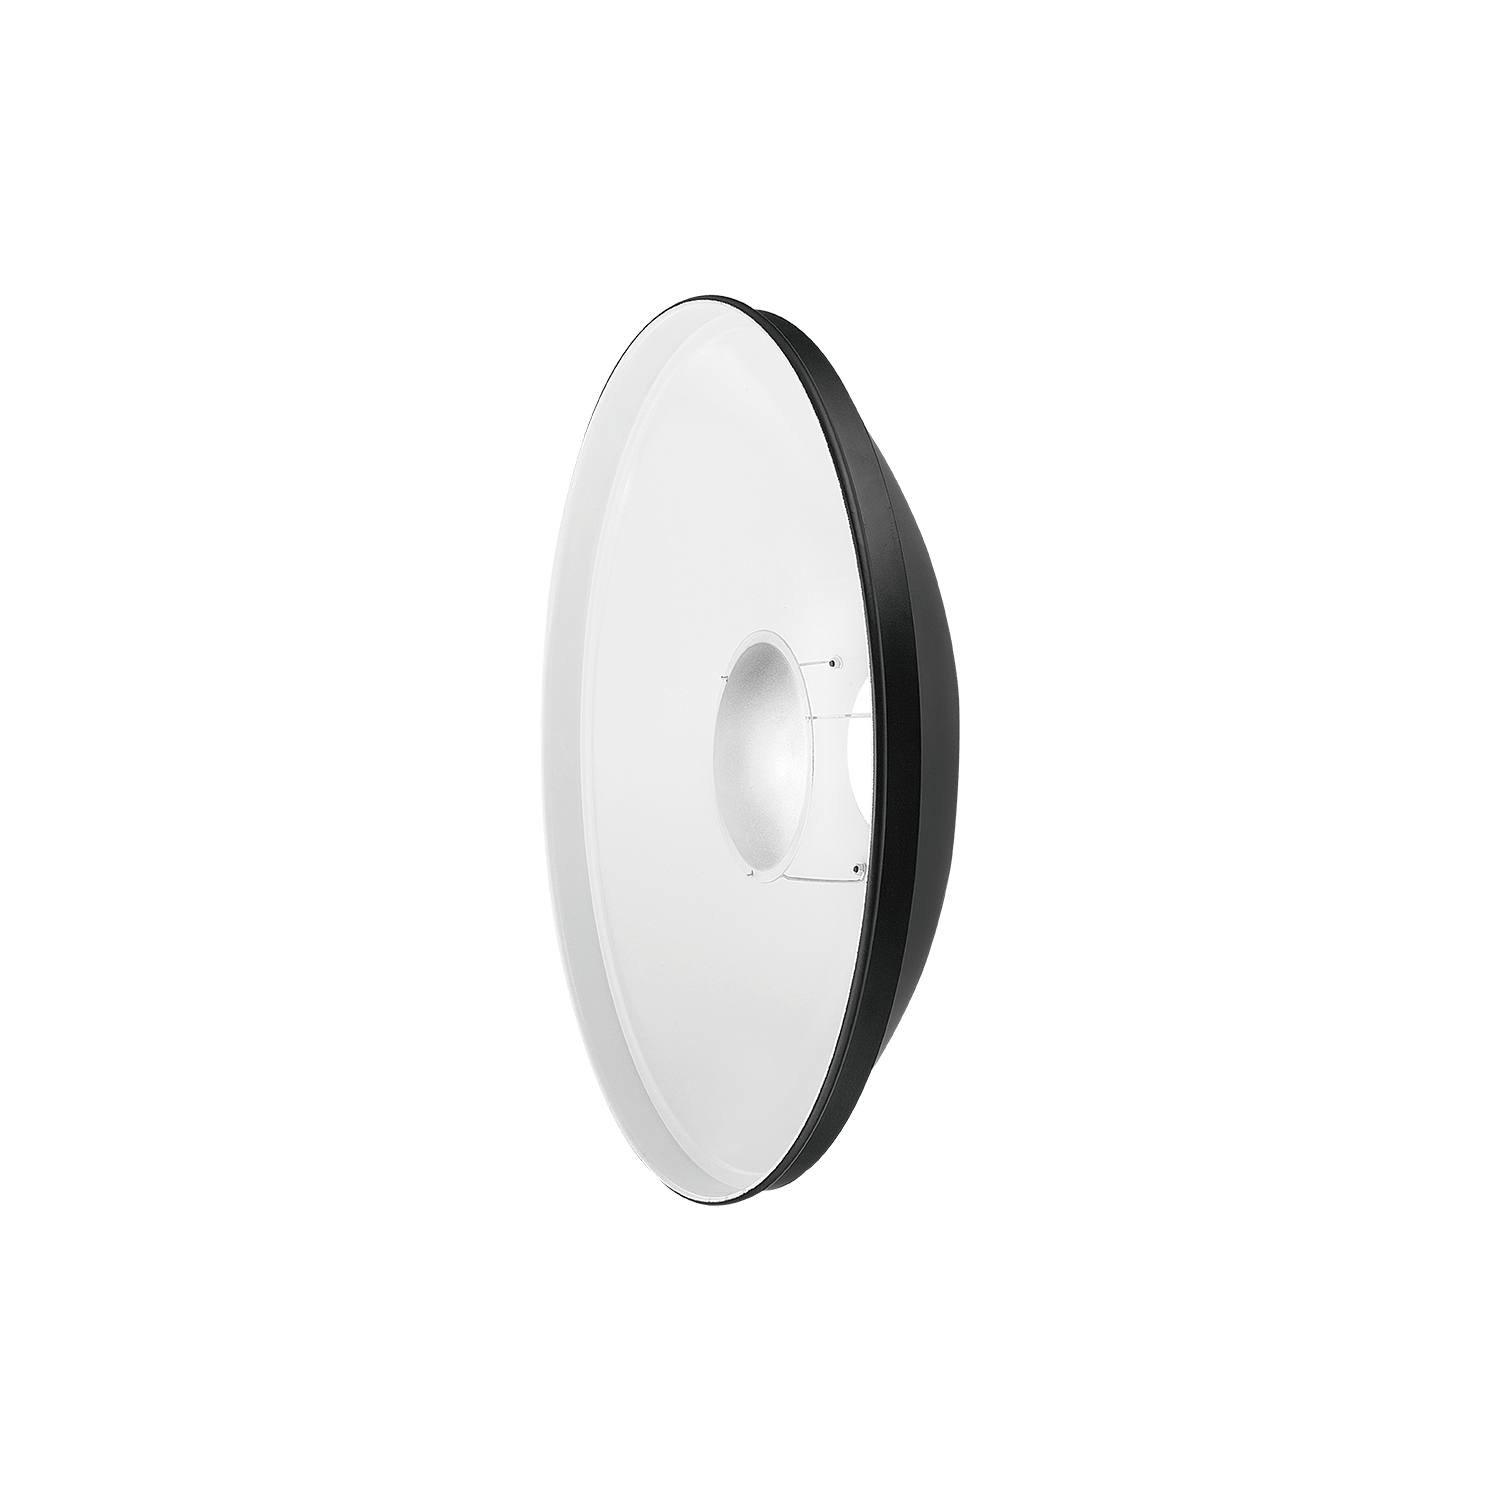 QZ-50-1 Radar Beauty Dish Reflektor 50 cm mit Multi-Adapter Jinbei